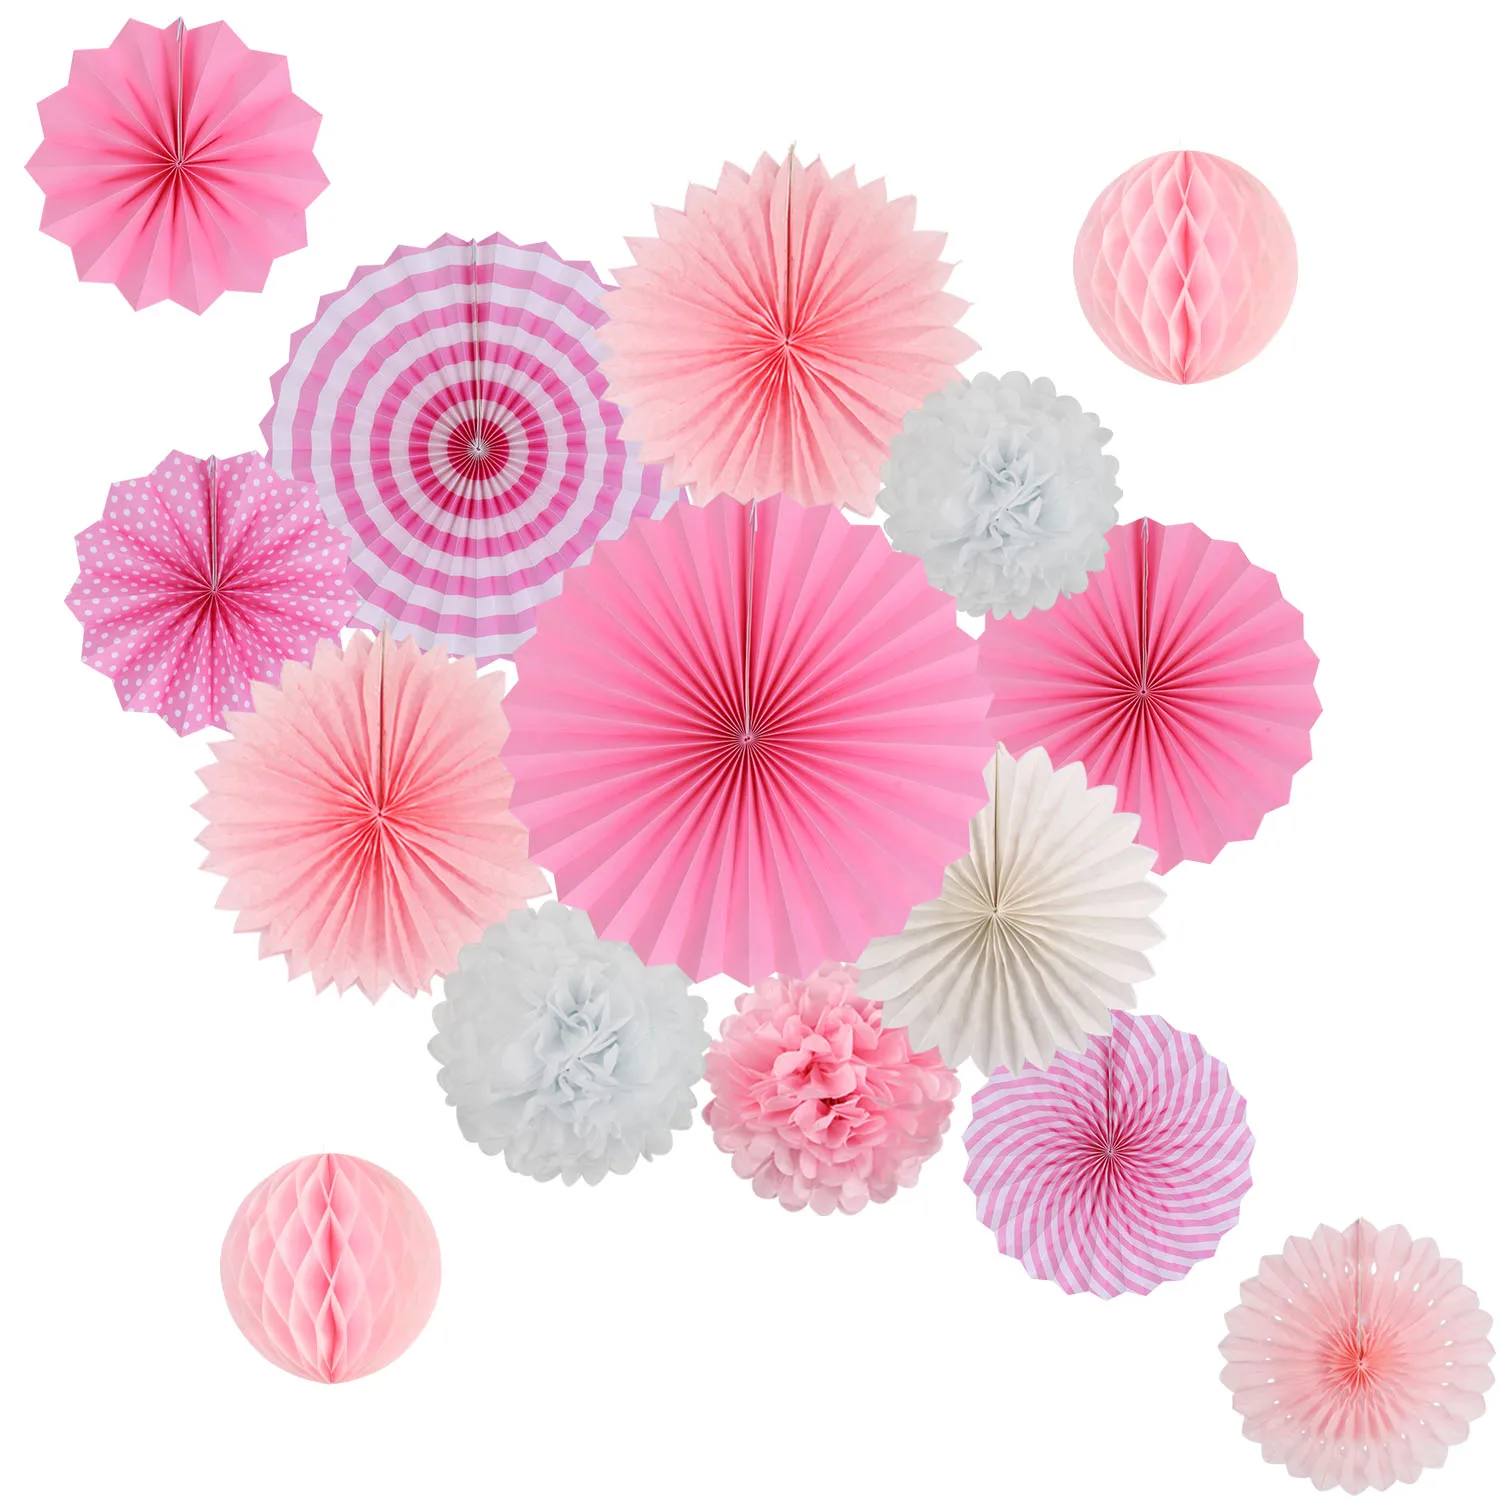 Zilue висящие украшения для вечеринки набор папиросная бумага веер бумага помпоны цветы для дня рождения девичник офисные вечерние украшения - Цвет: Pink White